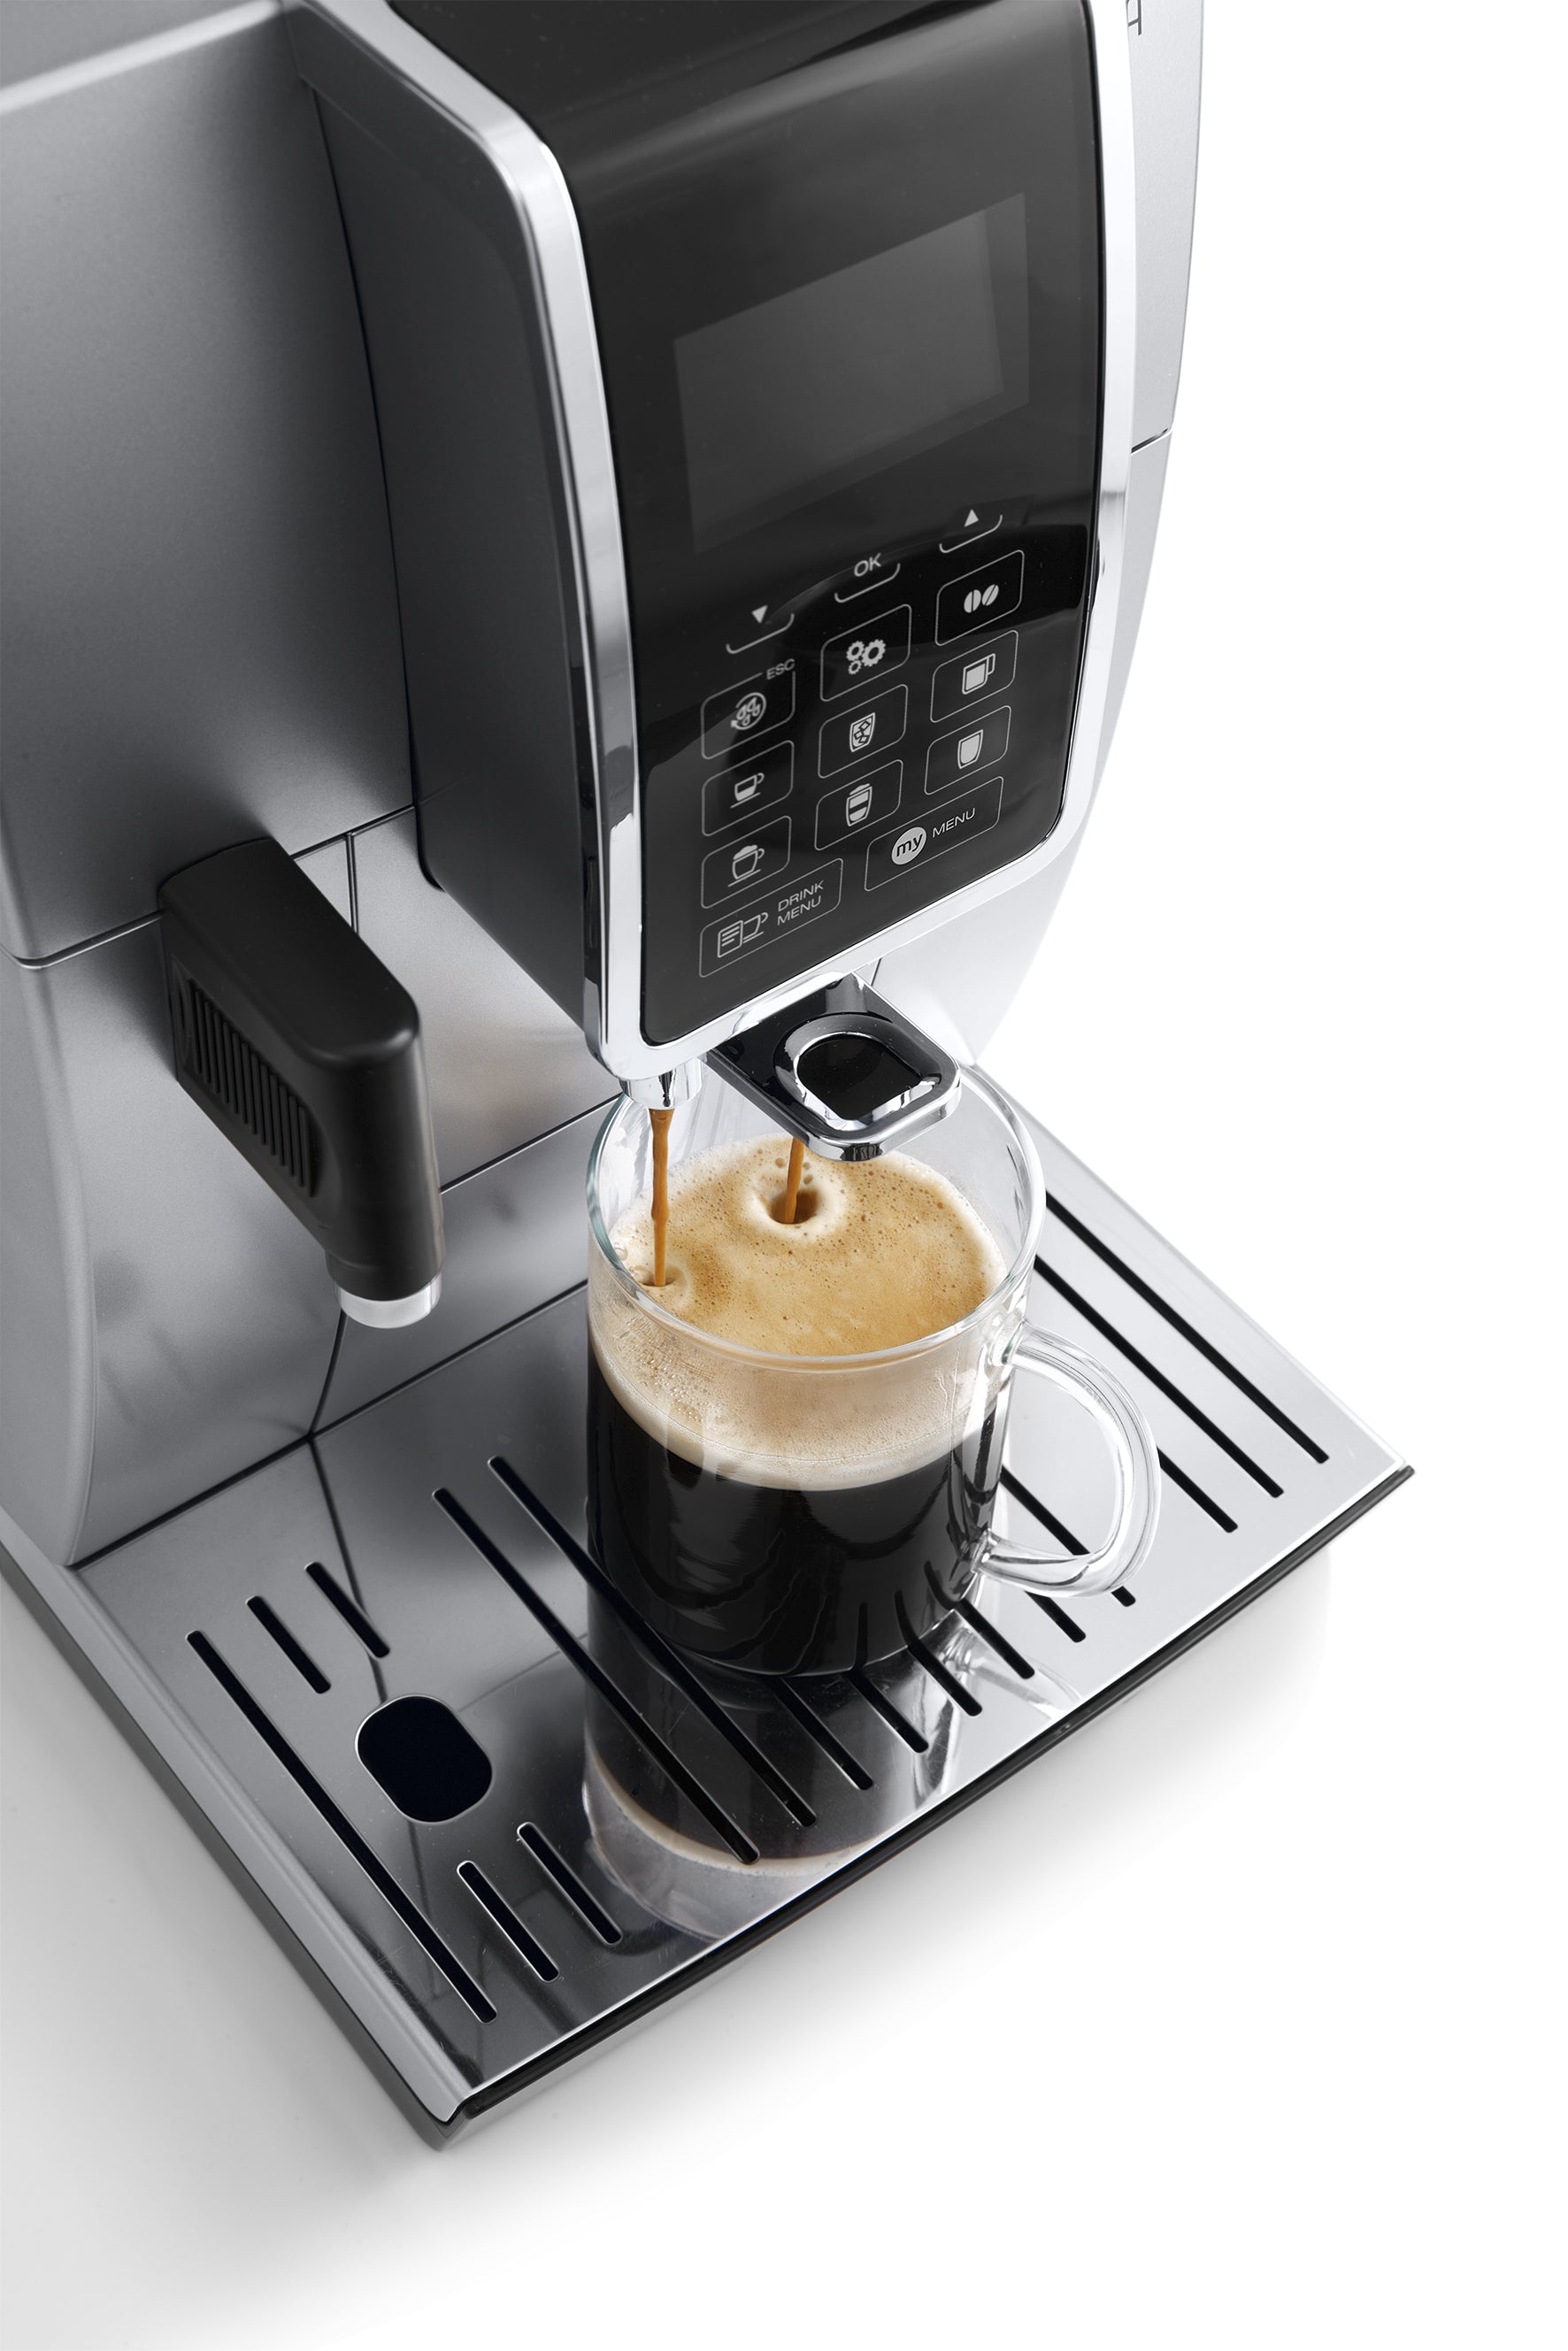 The De'Longhi Dinamica ECAM35020W – Whole Latte Love